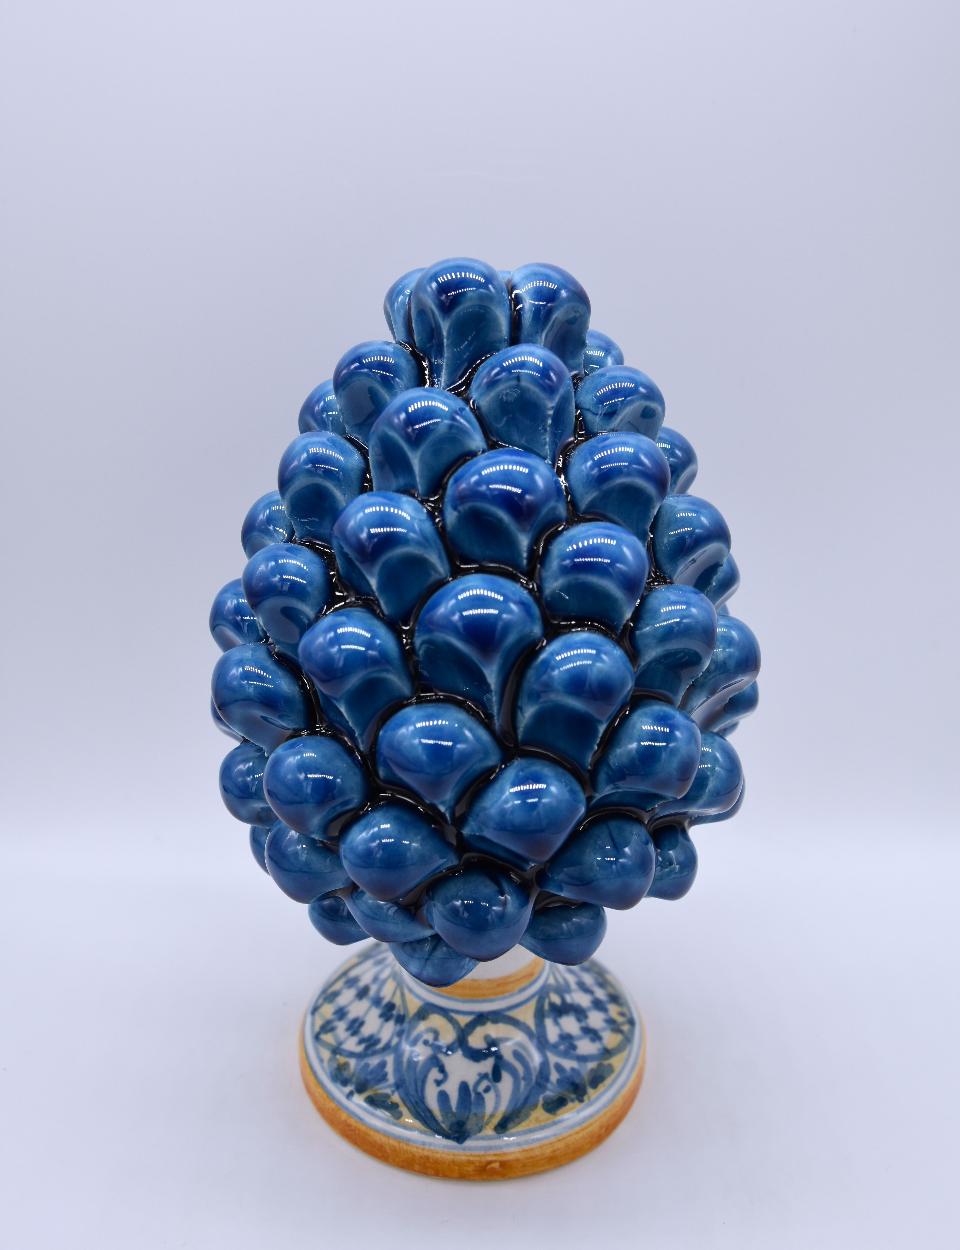 Pigna siciliana in ceramica blu antico h.15 cm Produzione artigianale di Caltagirone con base decorata